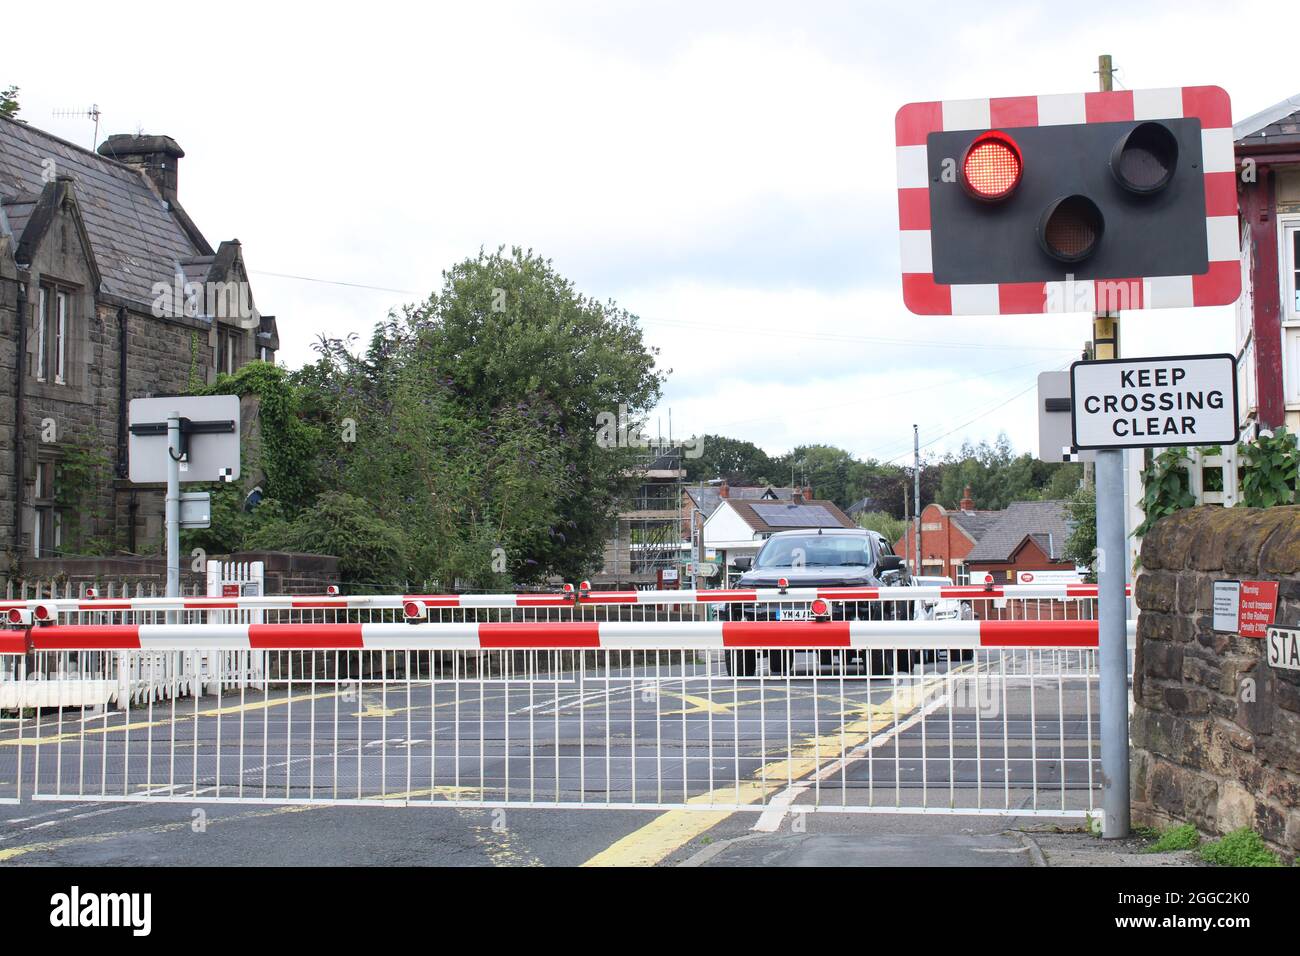 Barrière de passage à niveau de chemin de fer vers le bas avec des véhicules attendant que le train passe. Parbold, Lancashire, Royaume-Uni Banque D'Images